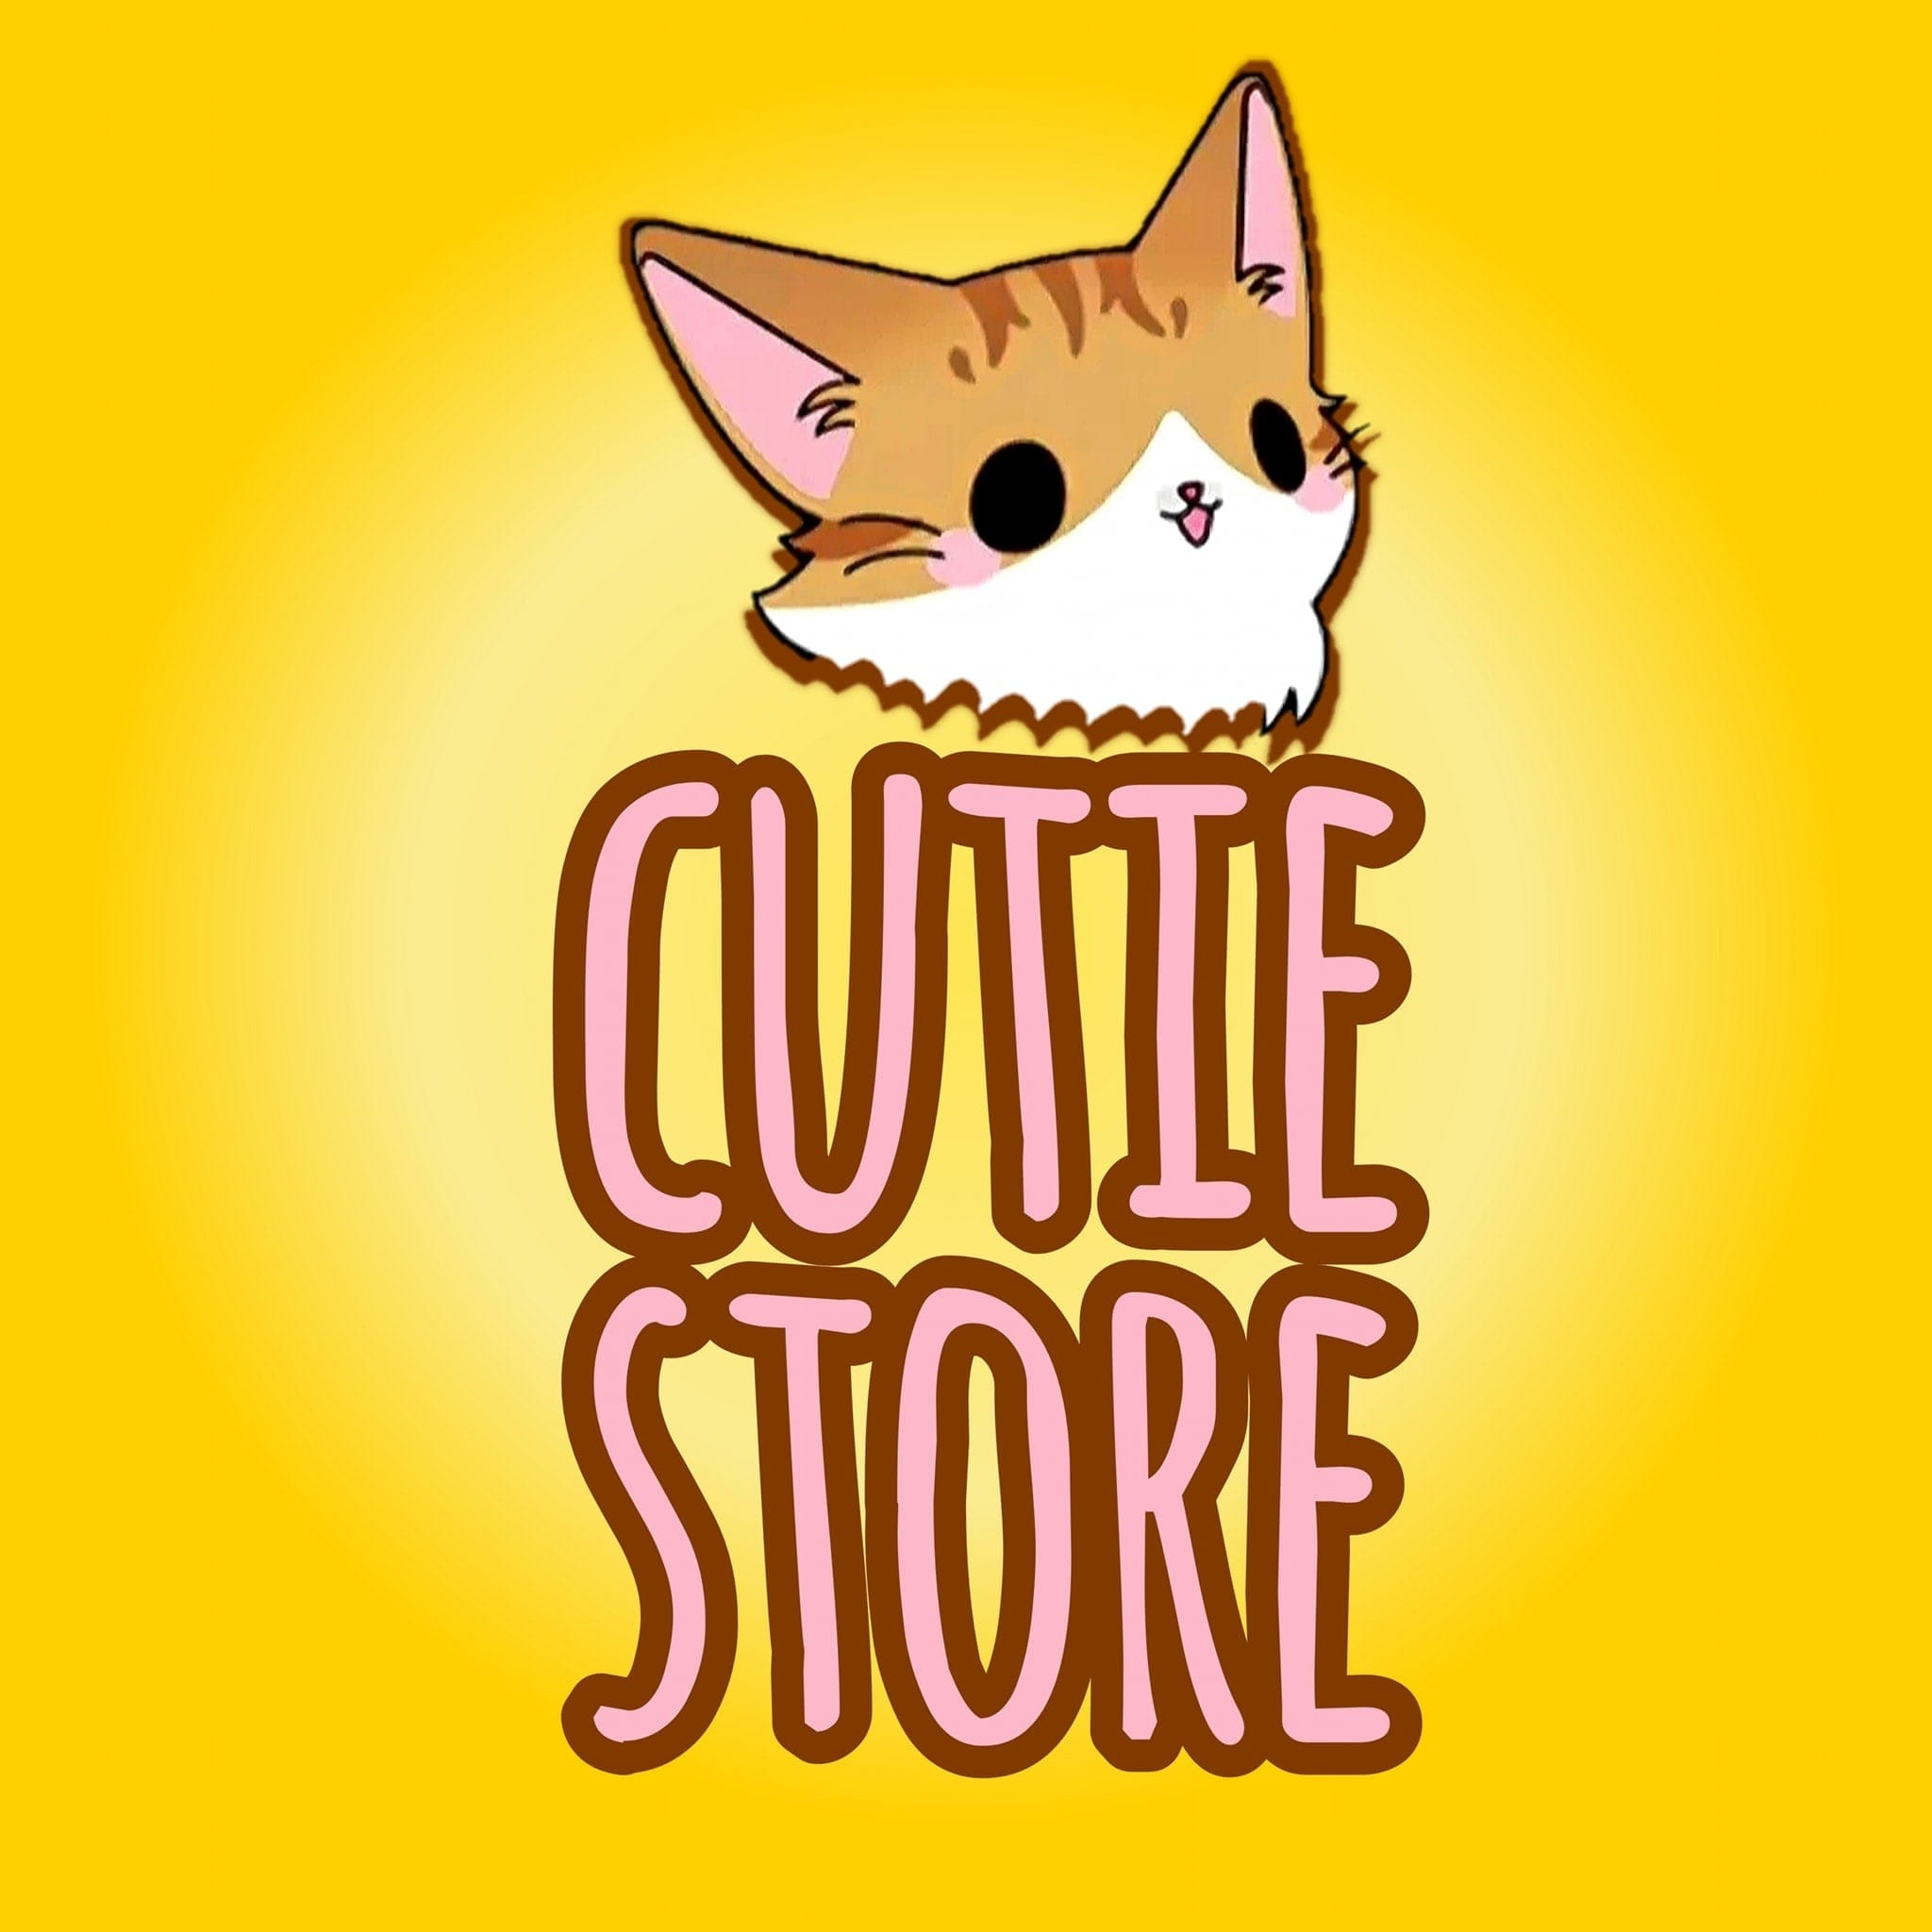 Cutie Store